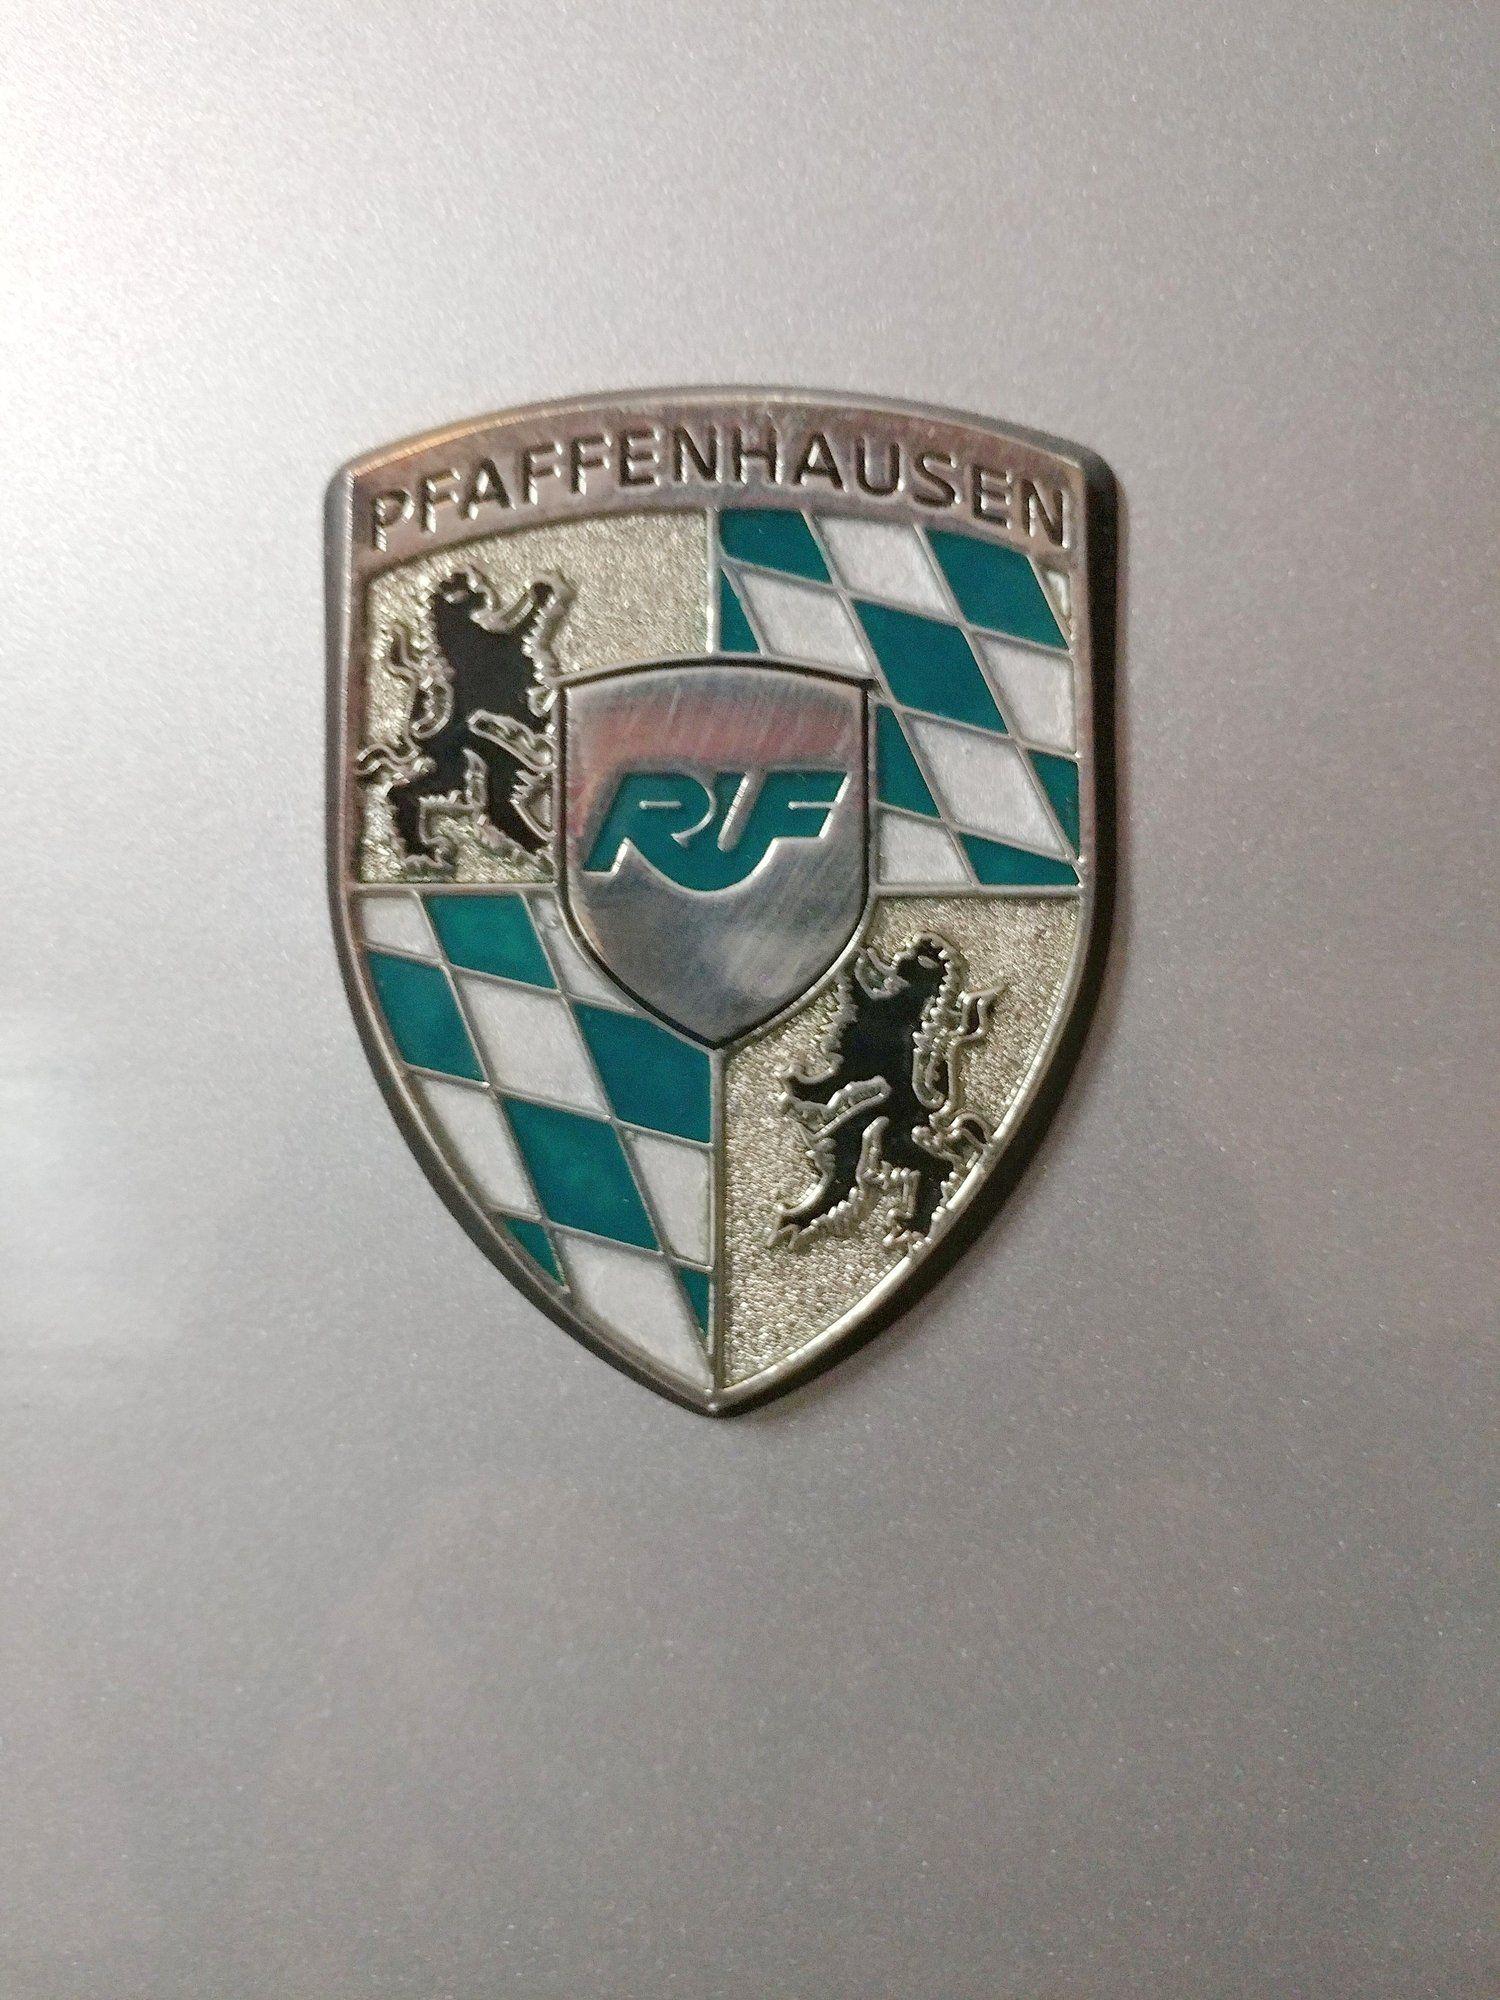 Ruf Porsche Logo - Updated Pics of my 997 RUF R-Kompressor - Page 5 - Rennlist ...